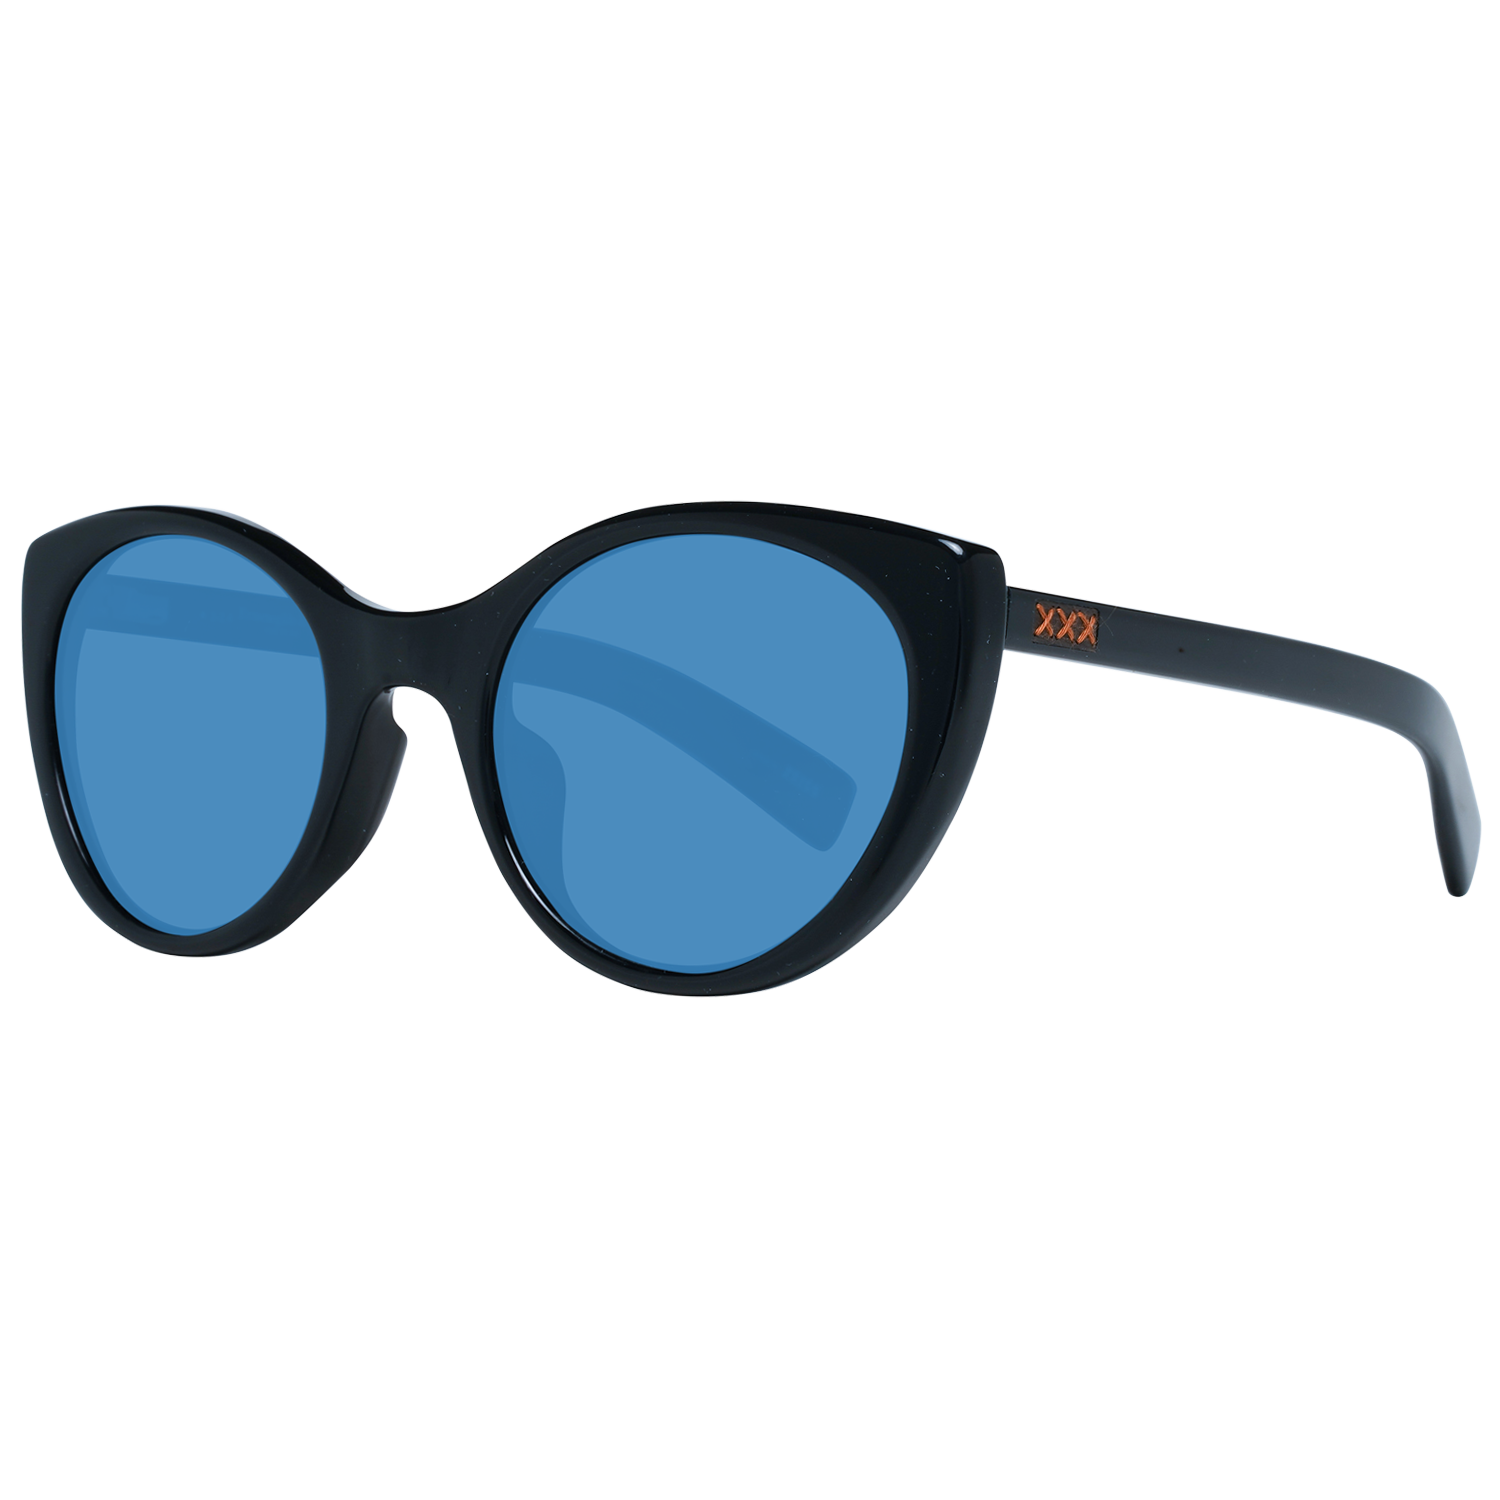 Zegna Couture Sunglasses Zegna Couture Sunglasses ZC0009-F 53 01V Eyeglasses Eyewear UK USA Australia 